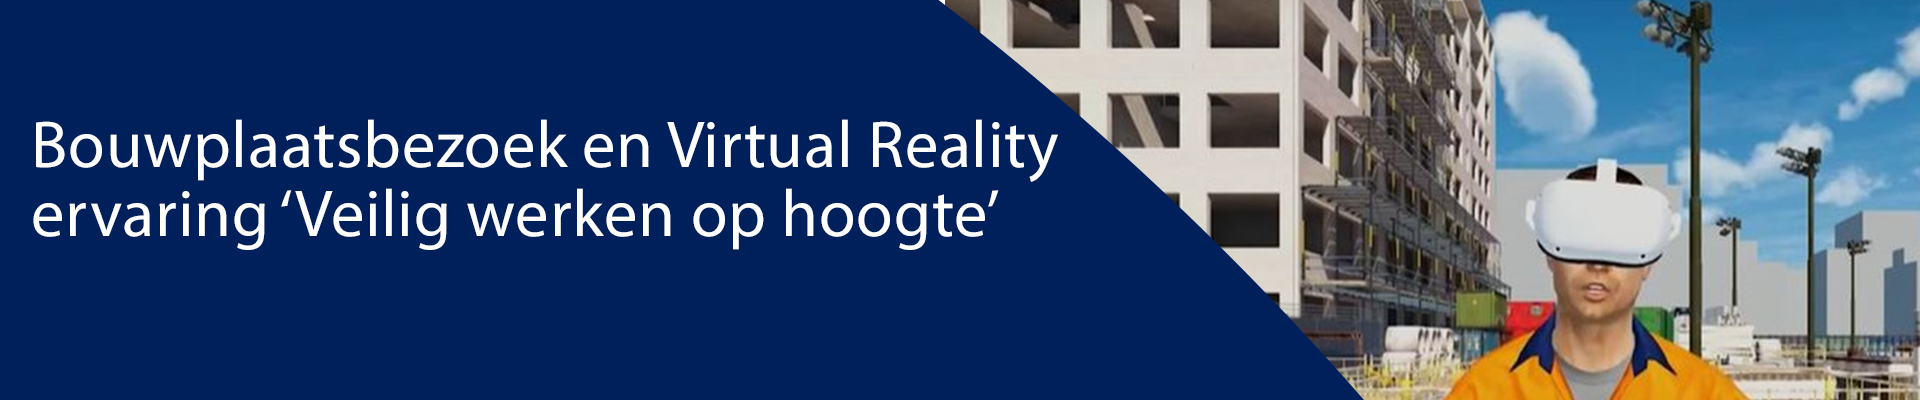 Bouwplaatsbezoek en Virtual Reality ervaring ‘Veilig werken op hoogte’